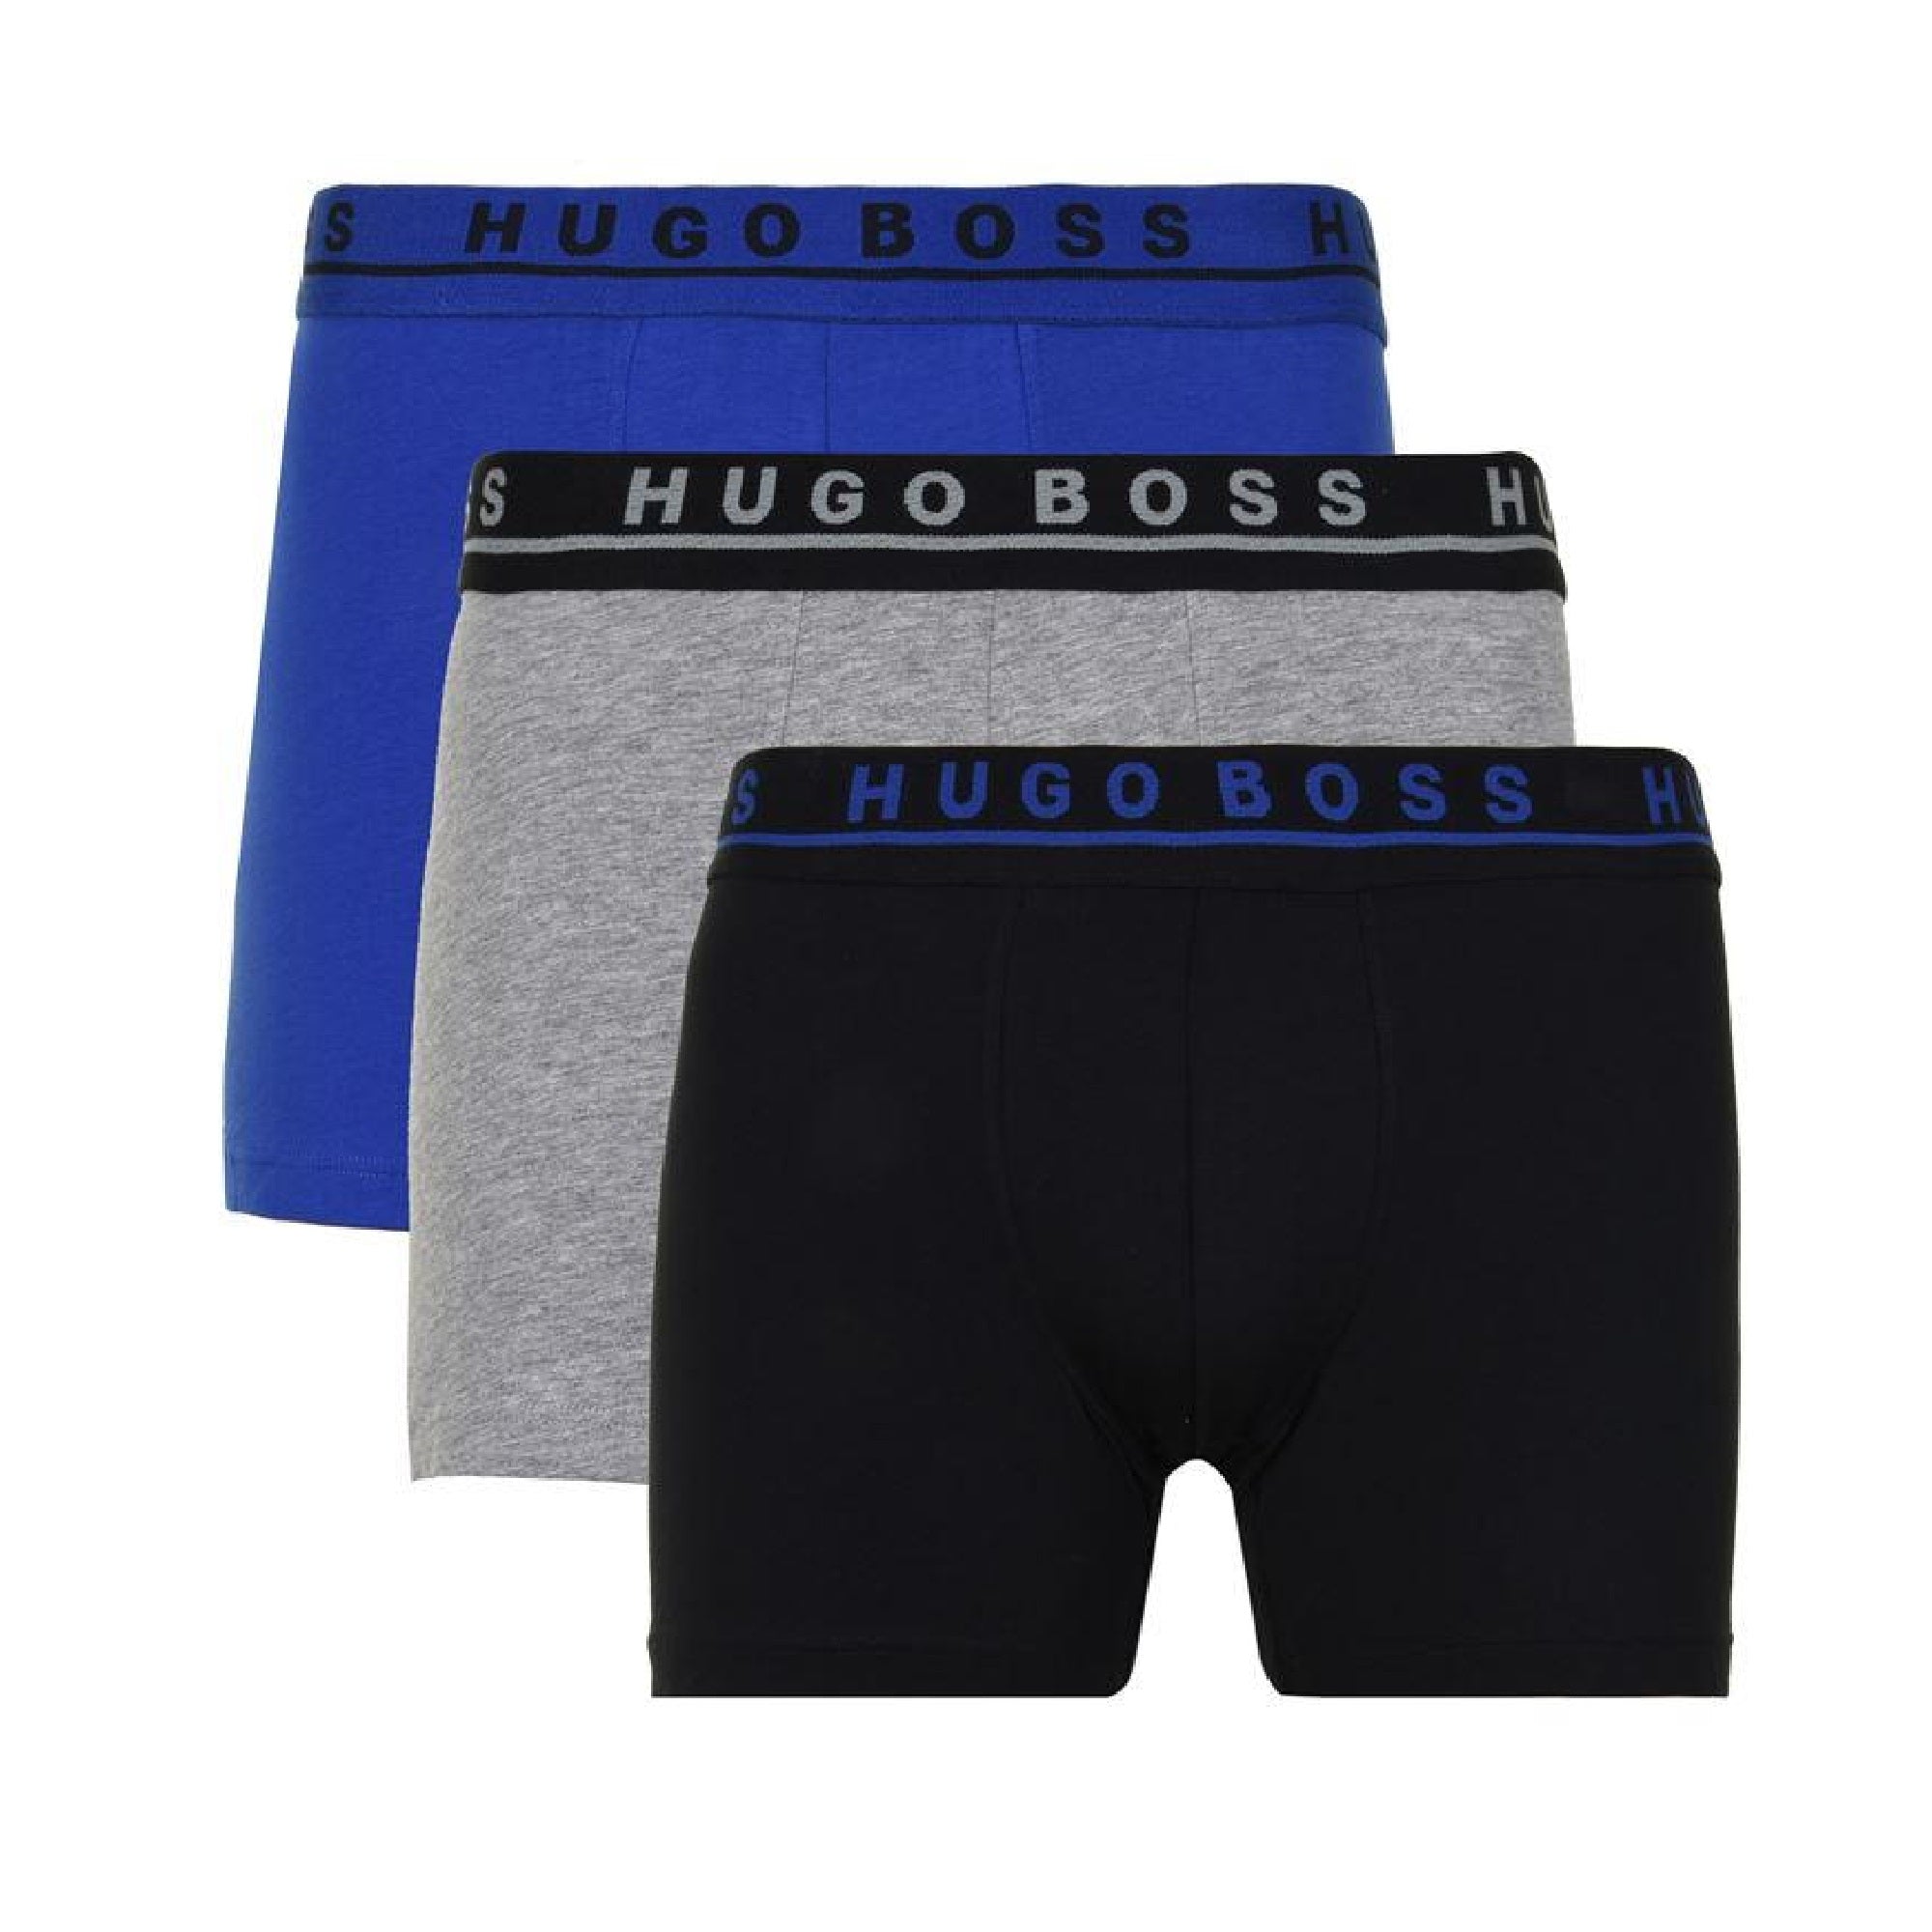 hugo boss boxer 3 pack